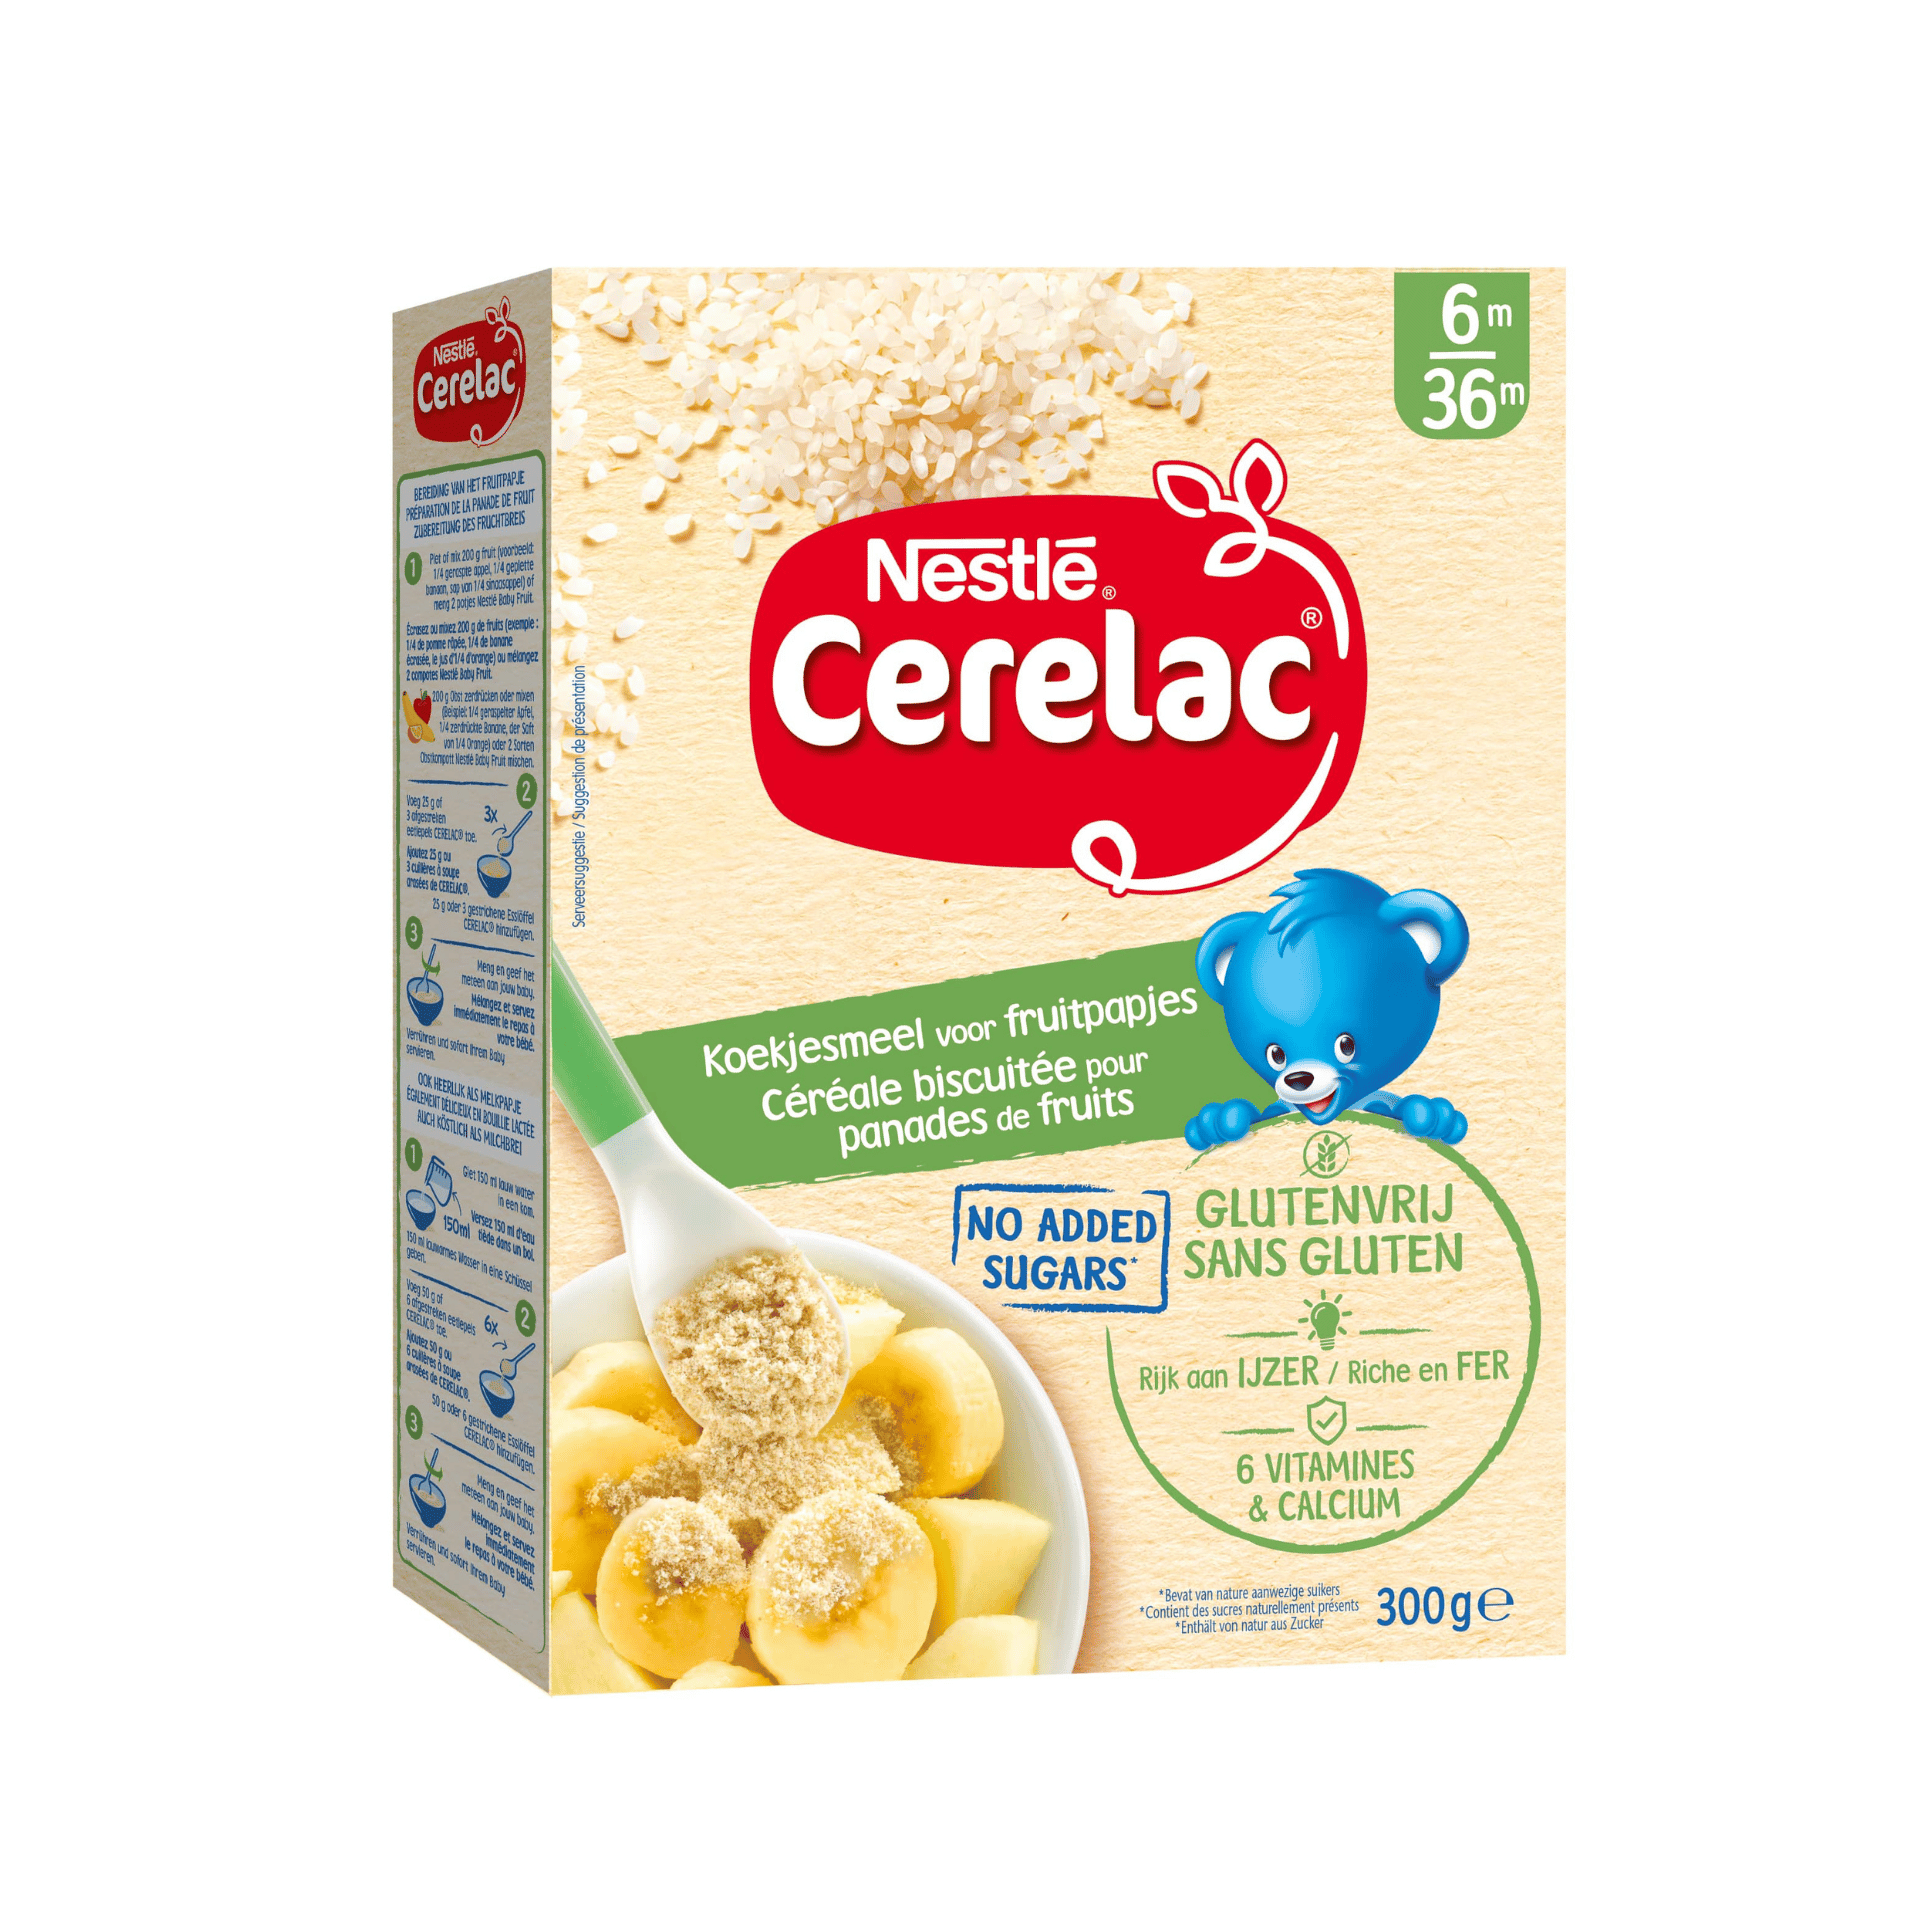 Nestlé Cerelac Koekjesmeel voor Fruitpapjes Glutenvrij